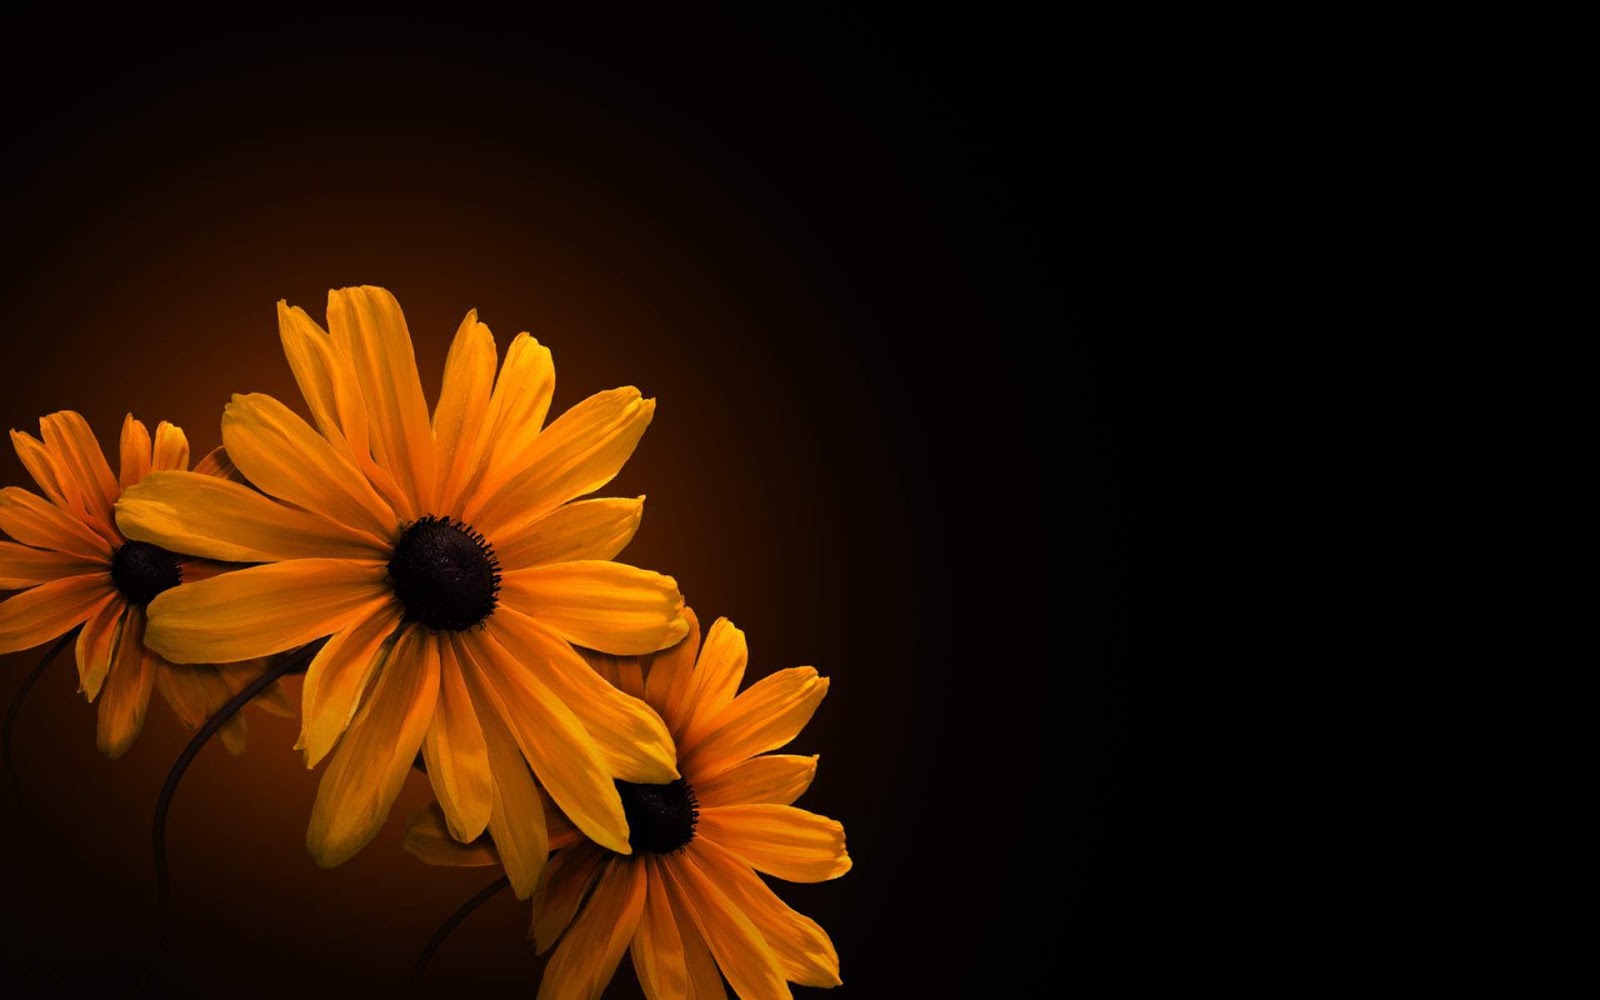 http://2.bp.blogspot.com/-KXldmzfxAPI/UNdbwyjBieI/AAAAAAAAB9s/Ia2Opzw9Ao8/s1600/Orange+Flower+on+Black+Background+Wallpaper+HD.jpg